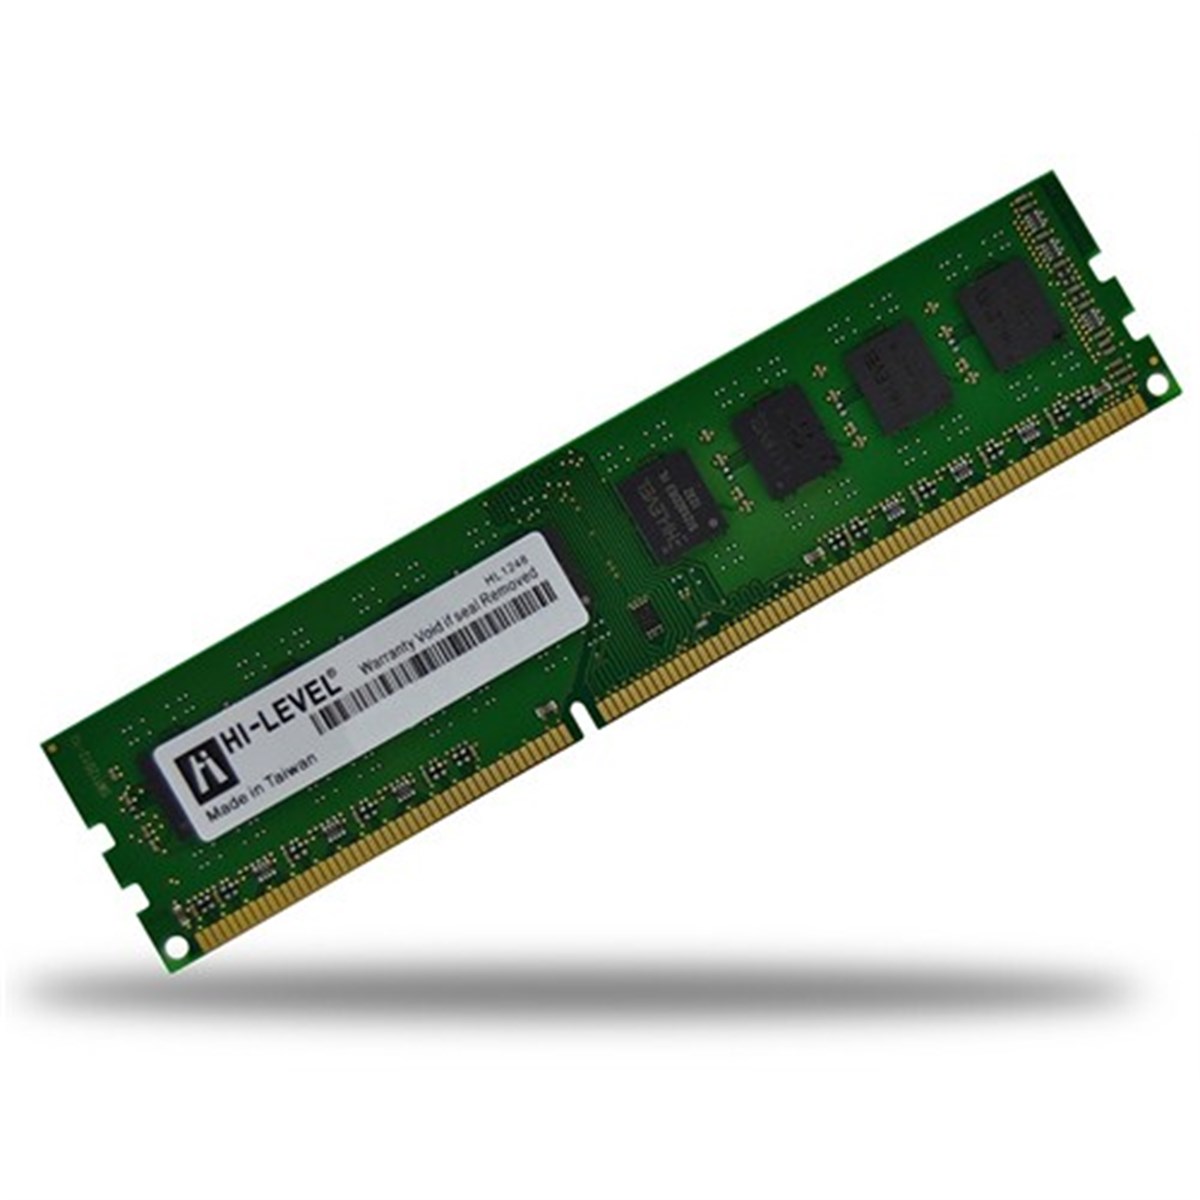 HI-LEVEL 2GB 800MHz DDR2 PC Ram (Kutulu) HLV-PC6400-2G